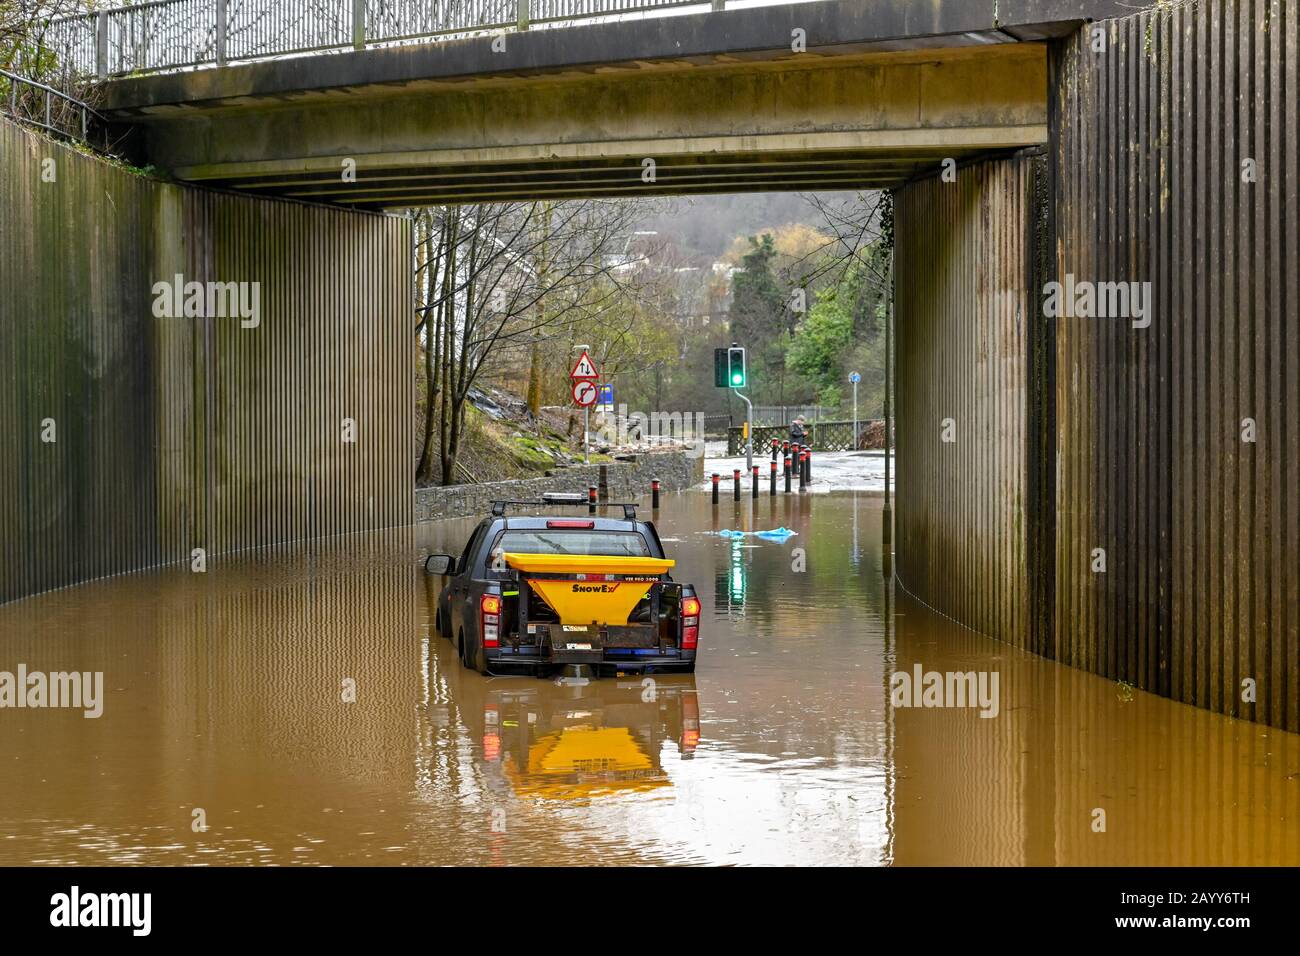 TREFOREST, GALLES - FEBBRAIO 2010: Veicolo 4x4 bloccato in acqua di giorno sotto un ponte stradale dopo che il fiume Taff ha fatto scoppiare le sue banche a Treforest, Galles Foto Stock